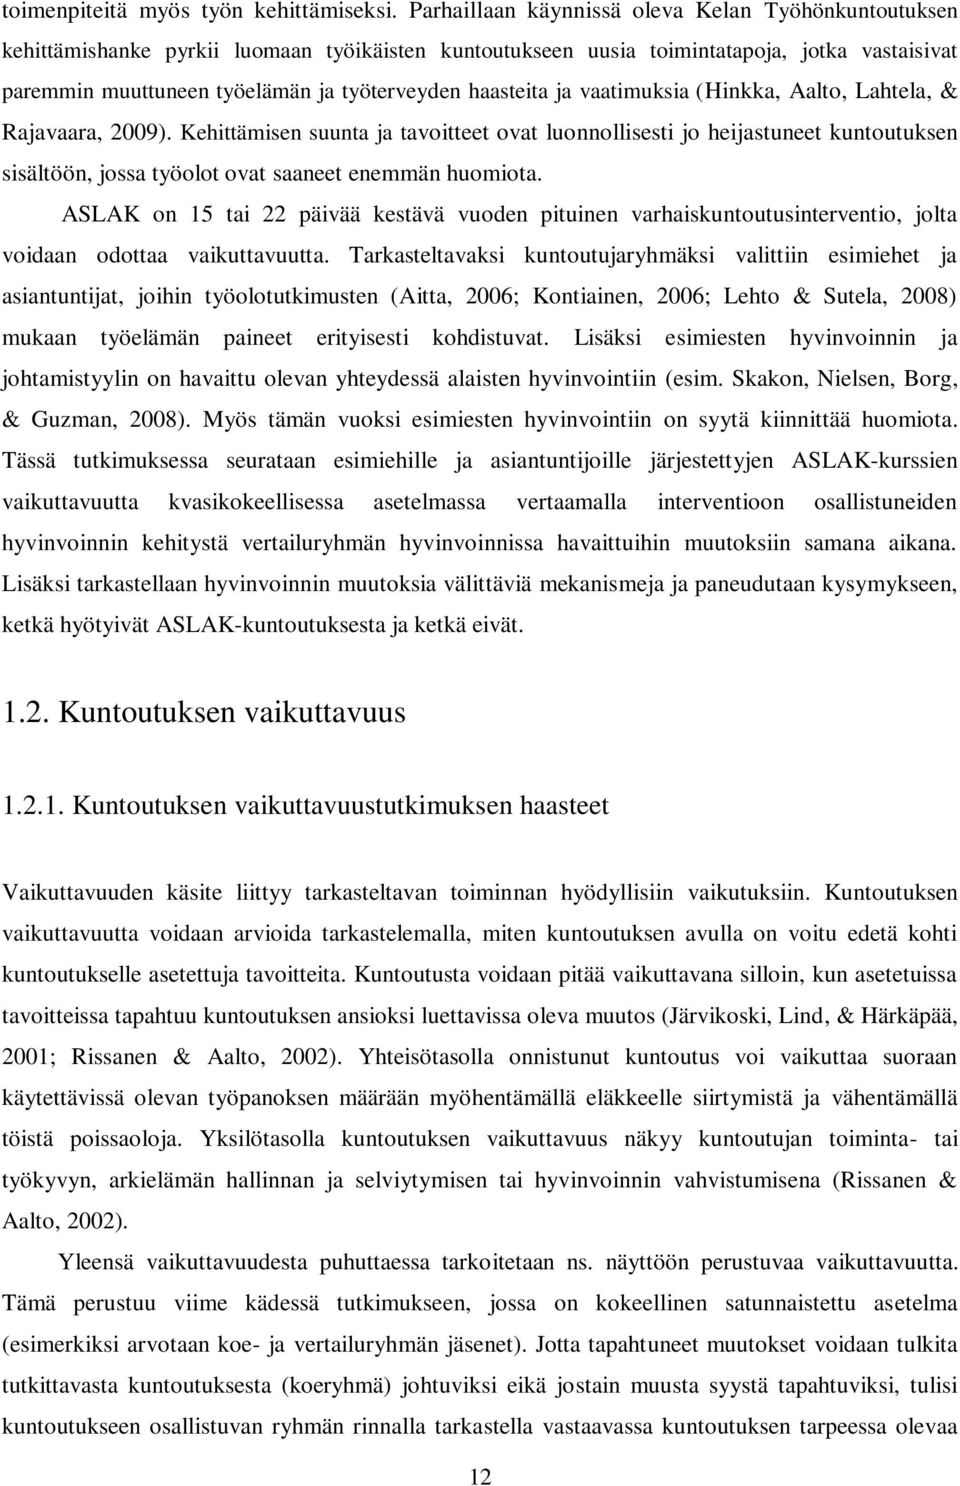 haasteita ja vaatimuksia (Hinkka, Aalto, Lahtela, & Rajavaara, 2009).